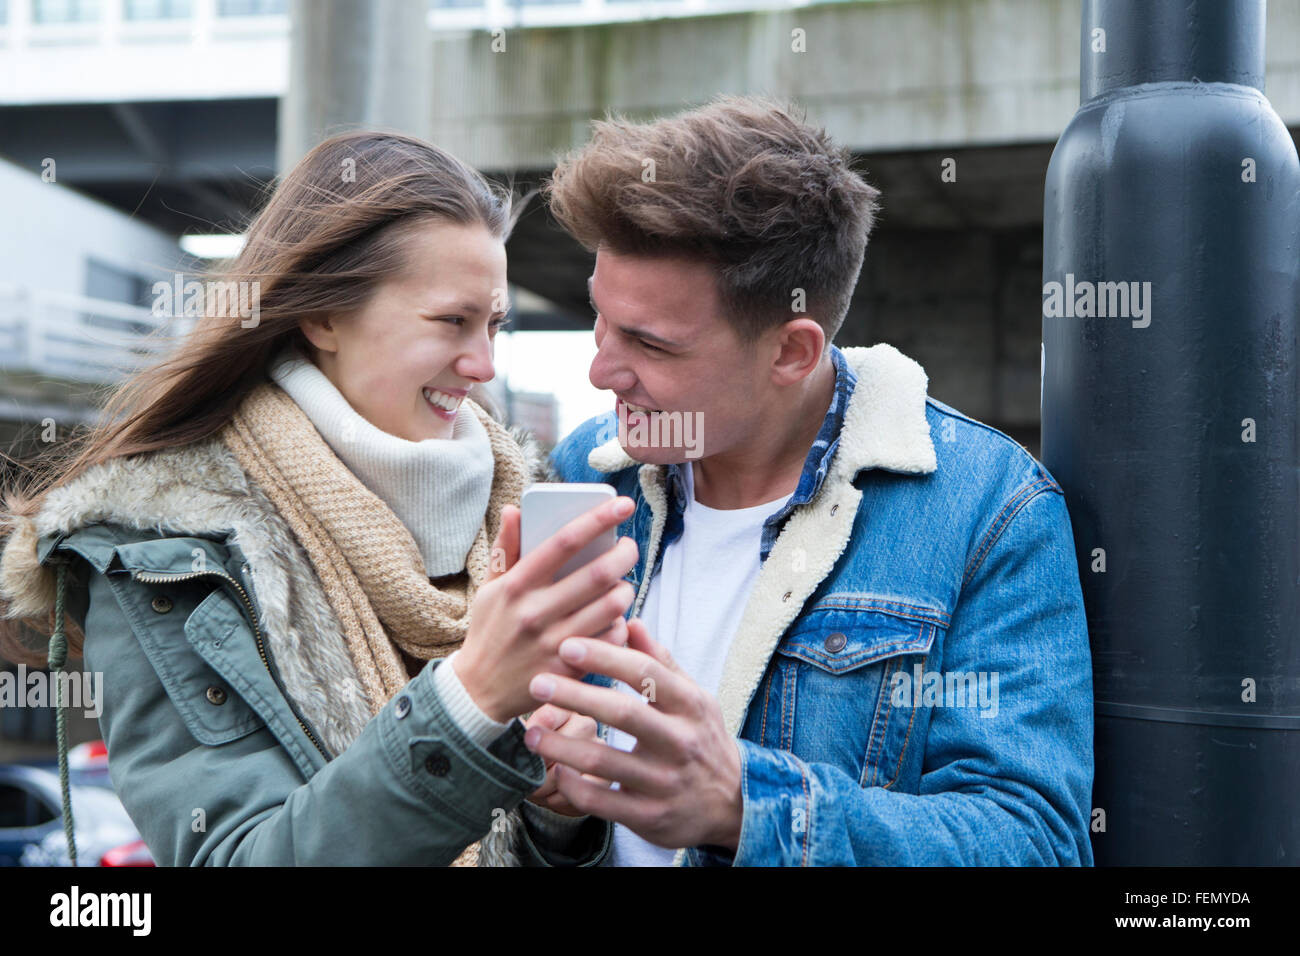 Coppia giovane in piedi insieme nel freddo, guardando uno smartphone insieme Foto Stock